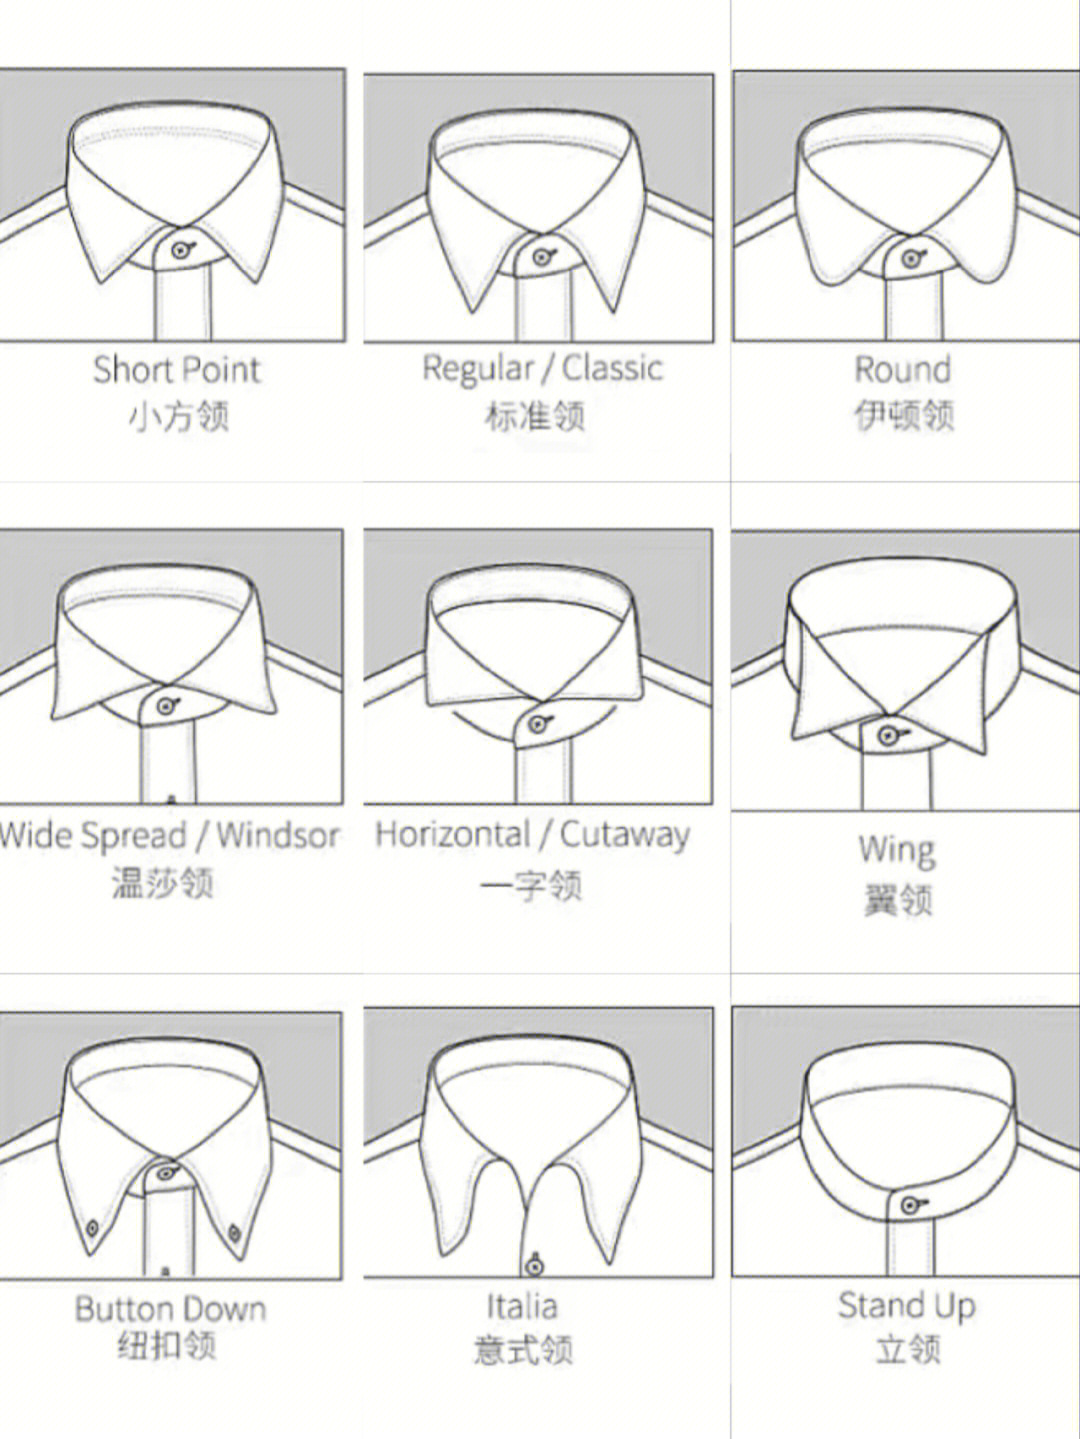 衬衫领型分类图解图片